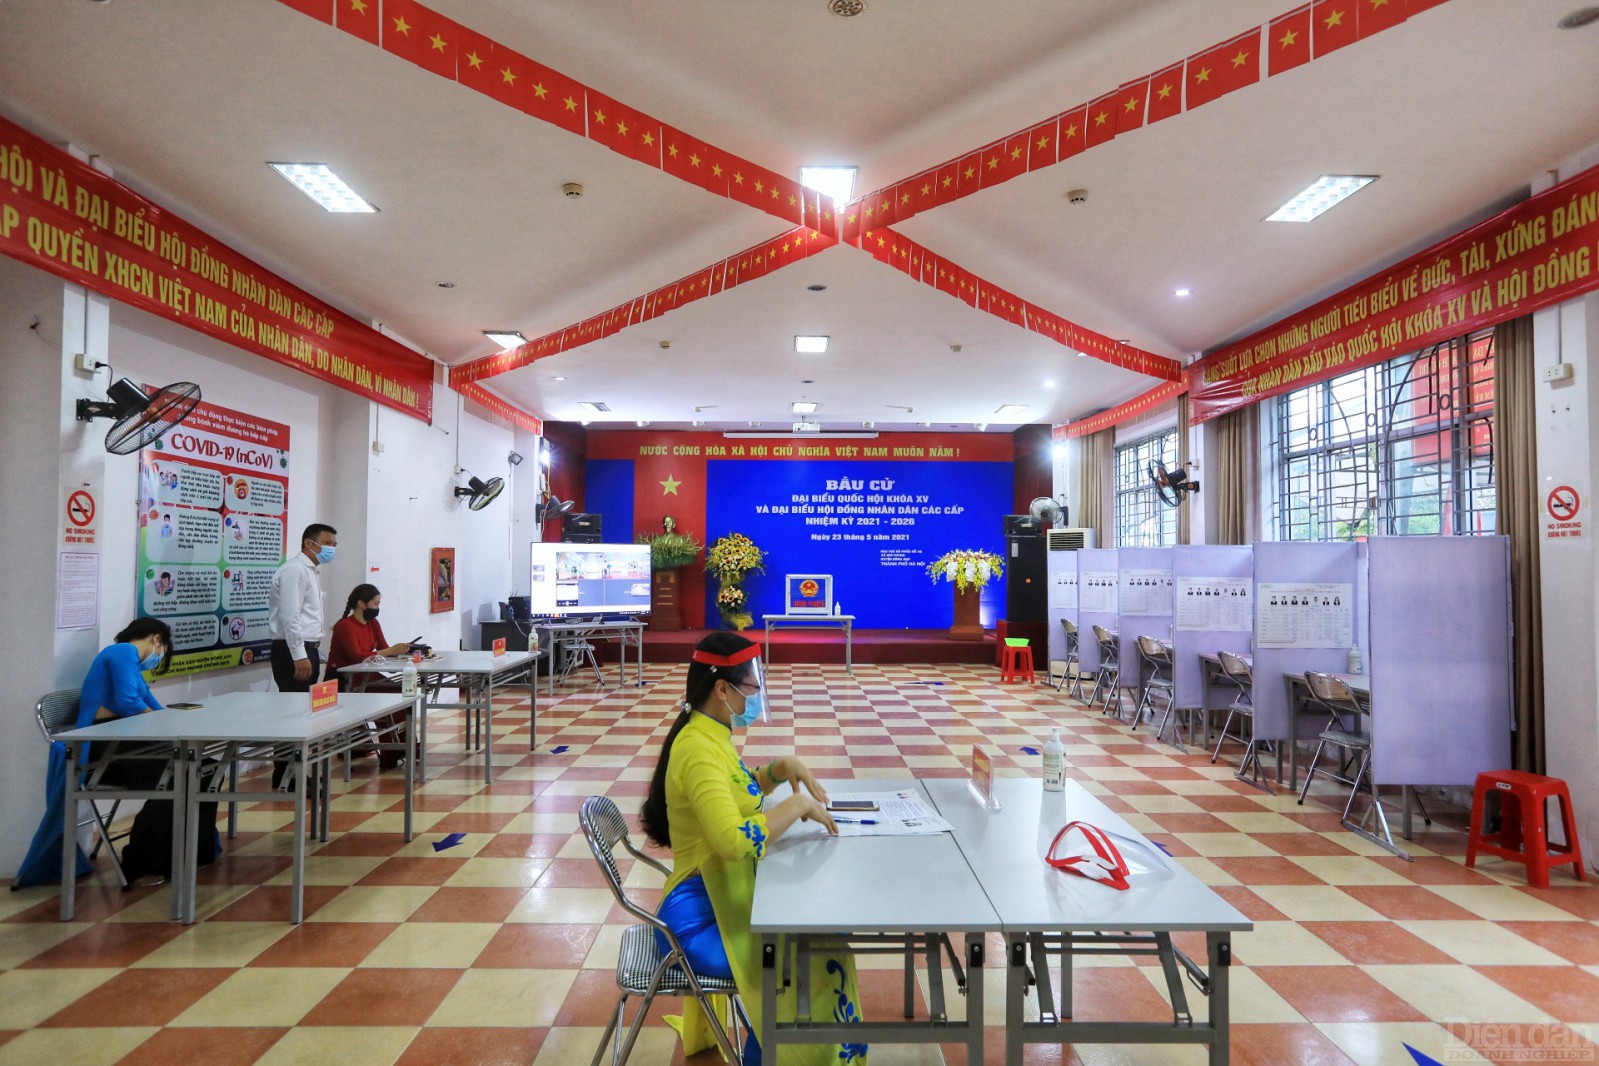 Vì số lượng công nhân tham gia bầu cử đông, Công đoàn các khu công nghiệp - chế xuất Hà Nội phối hợp với ban quản lý nhà ở khu nhà ở công nhân phải chia ca để công nhân đi bỏ phiếu.